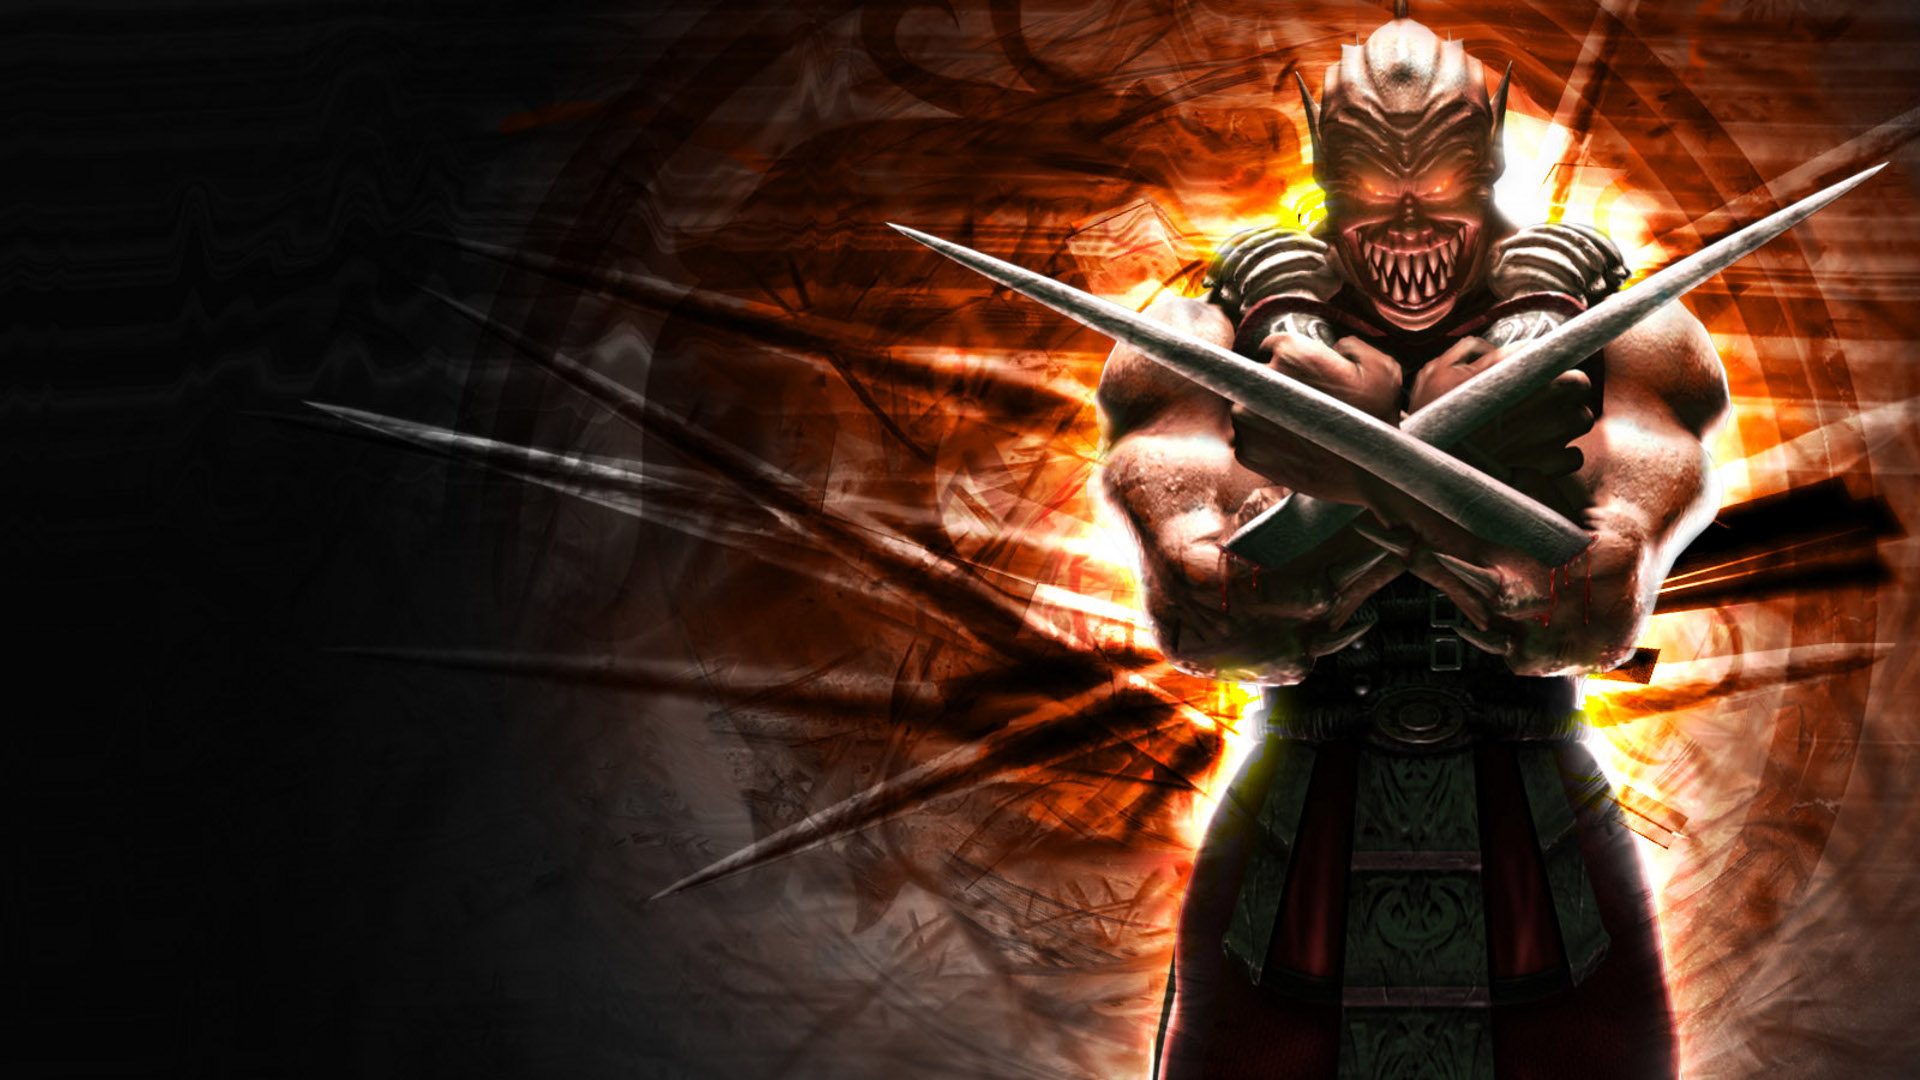 Descargar fondos de escritorio de Mortal Kombat: Desencadenado HD